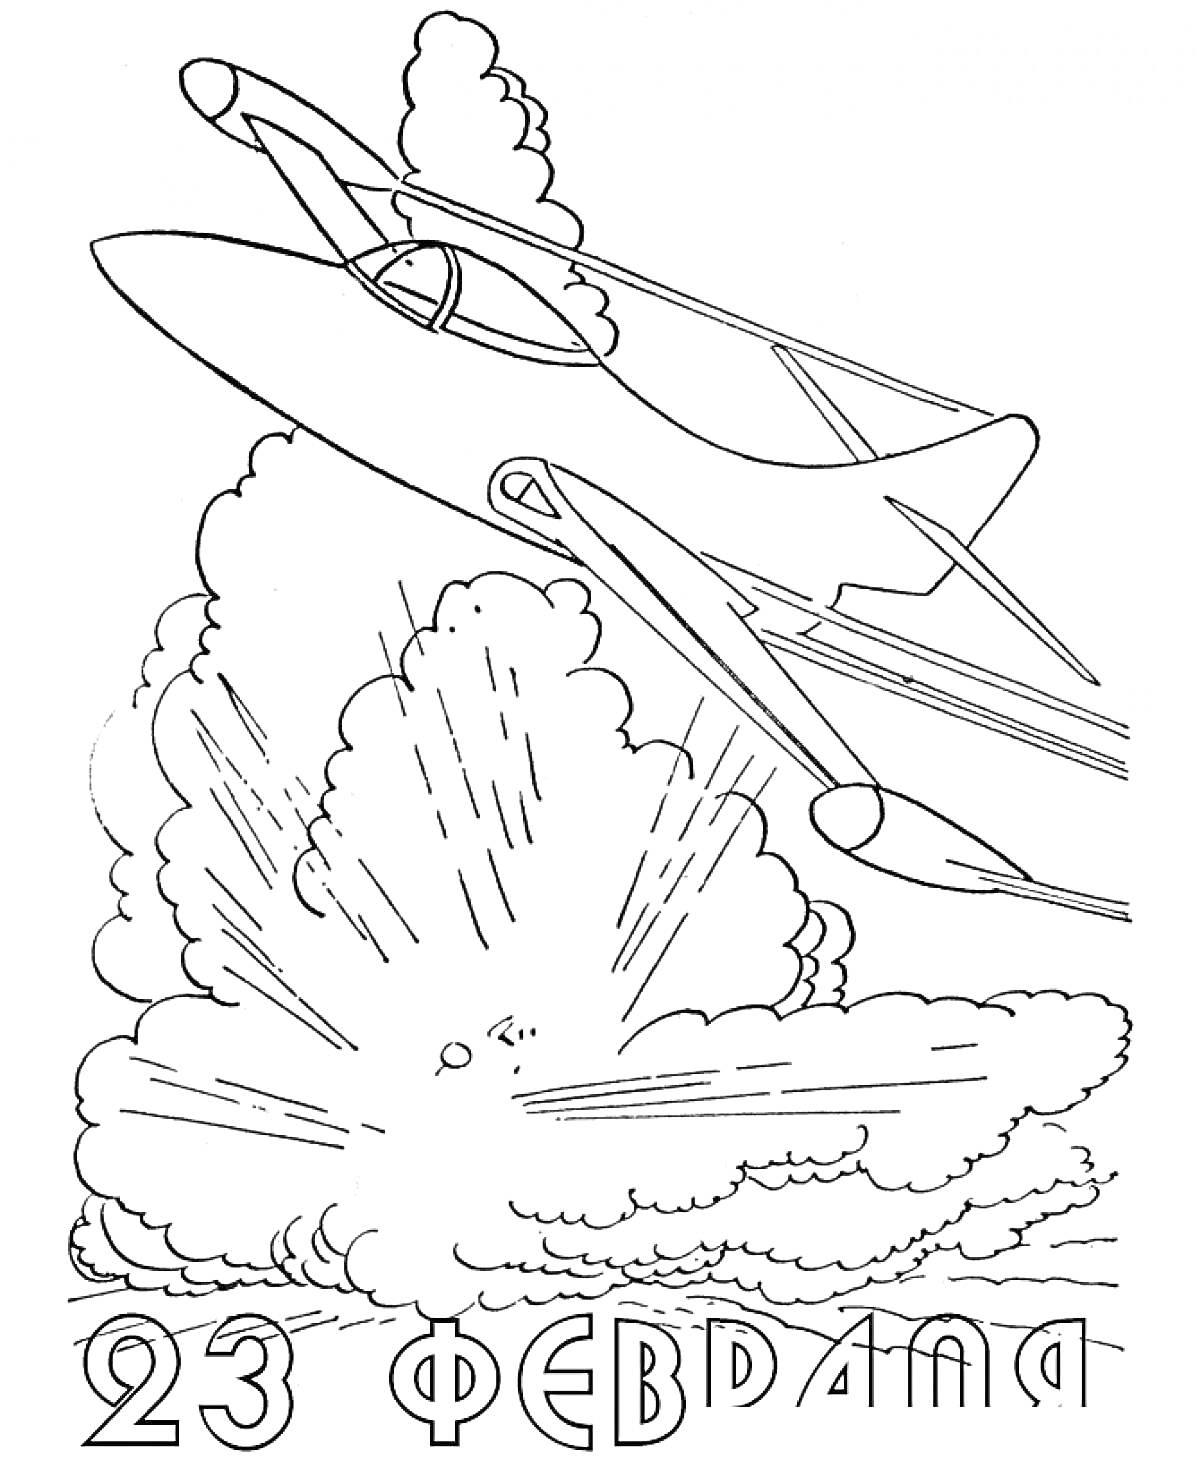 Самолет над облаками и взрывом с надписью 